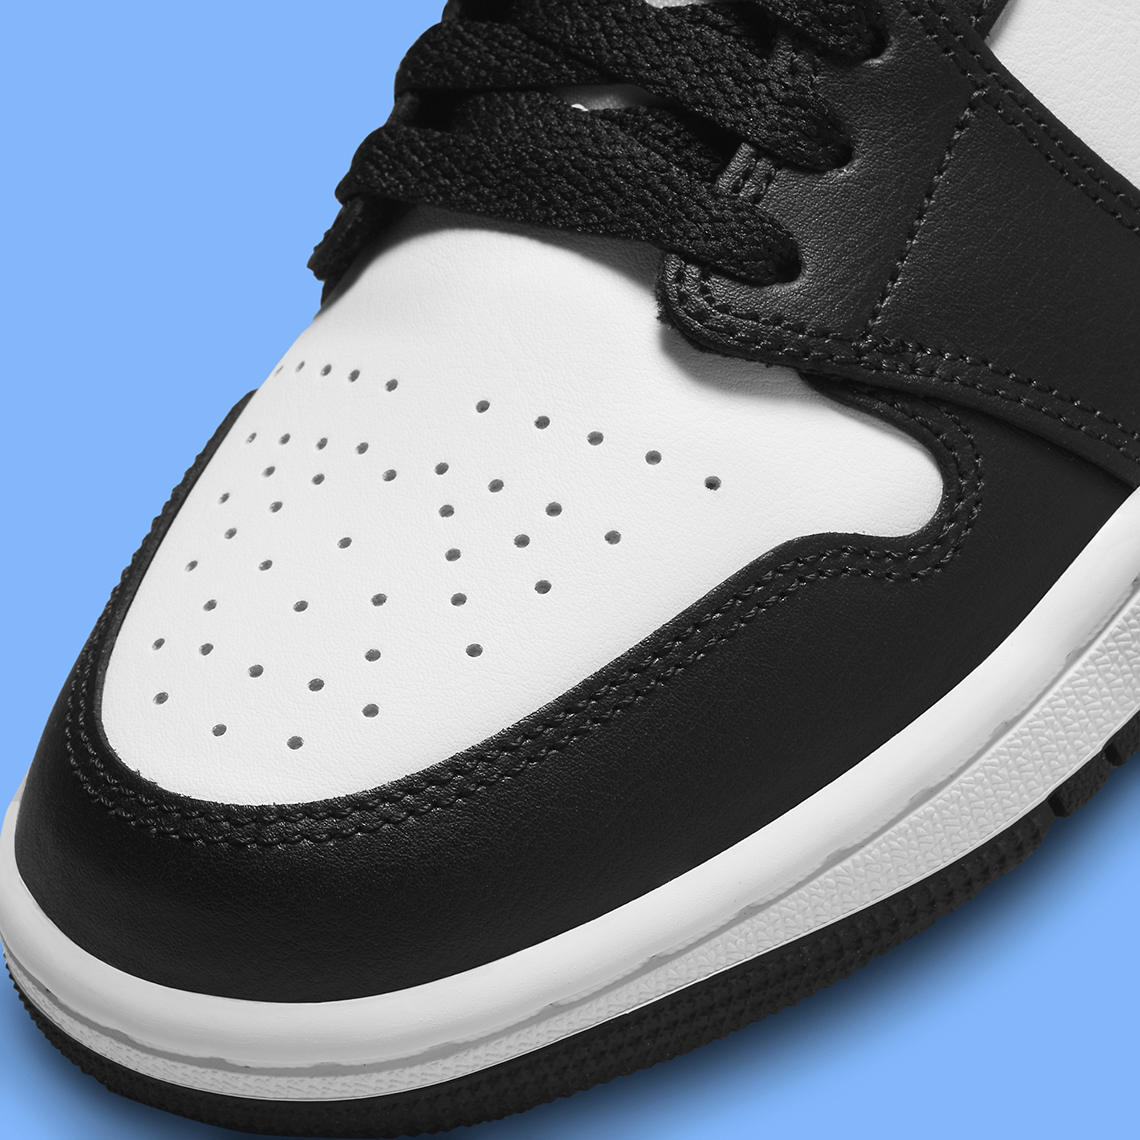 Nike Air Jordan 6 VI Retro White Blue Black